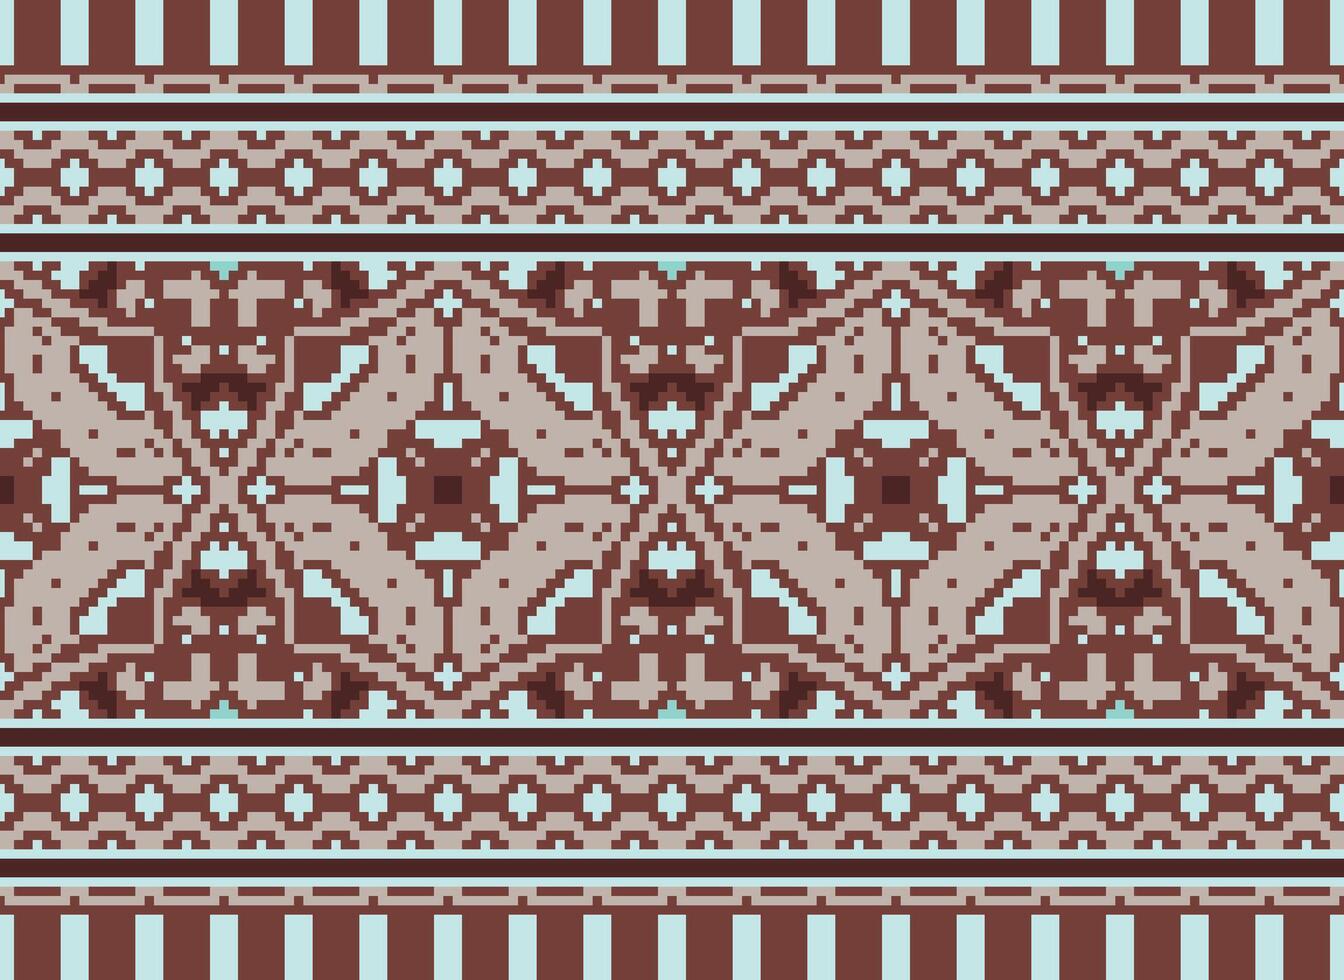 blomma broderi på brun bakgrund. ikat och korsa sy geometrisk sömlös mönster etnisk orientalisk traditionell. aztec stil illustration design för matta, tapet, Kläder, omslag, batik. vektor